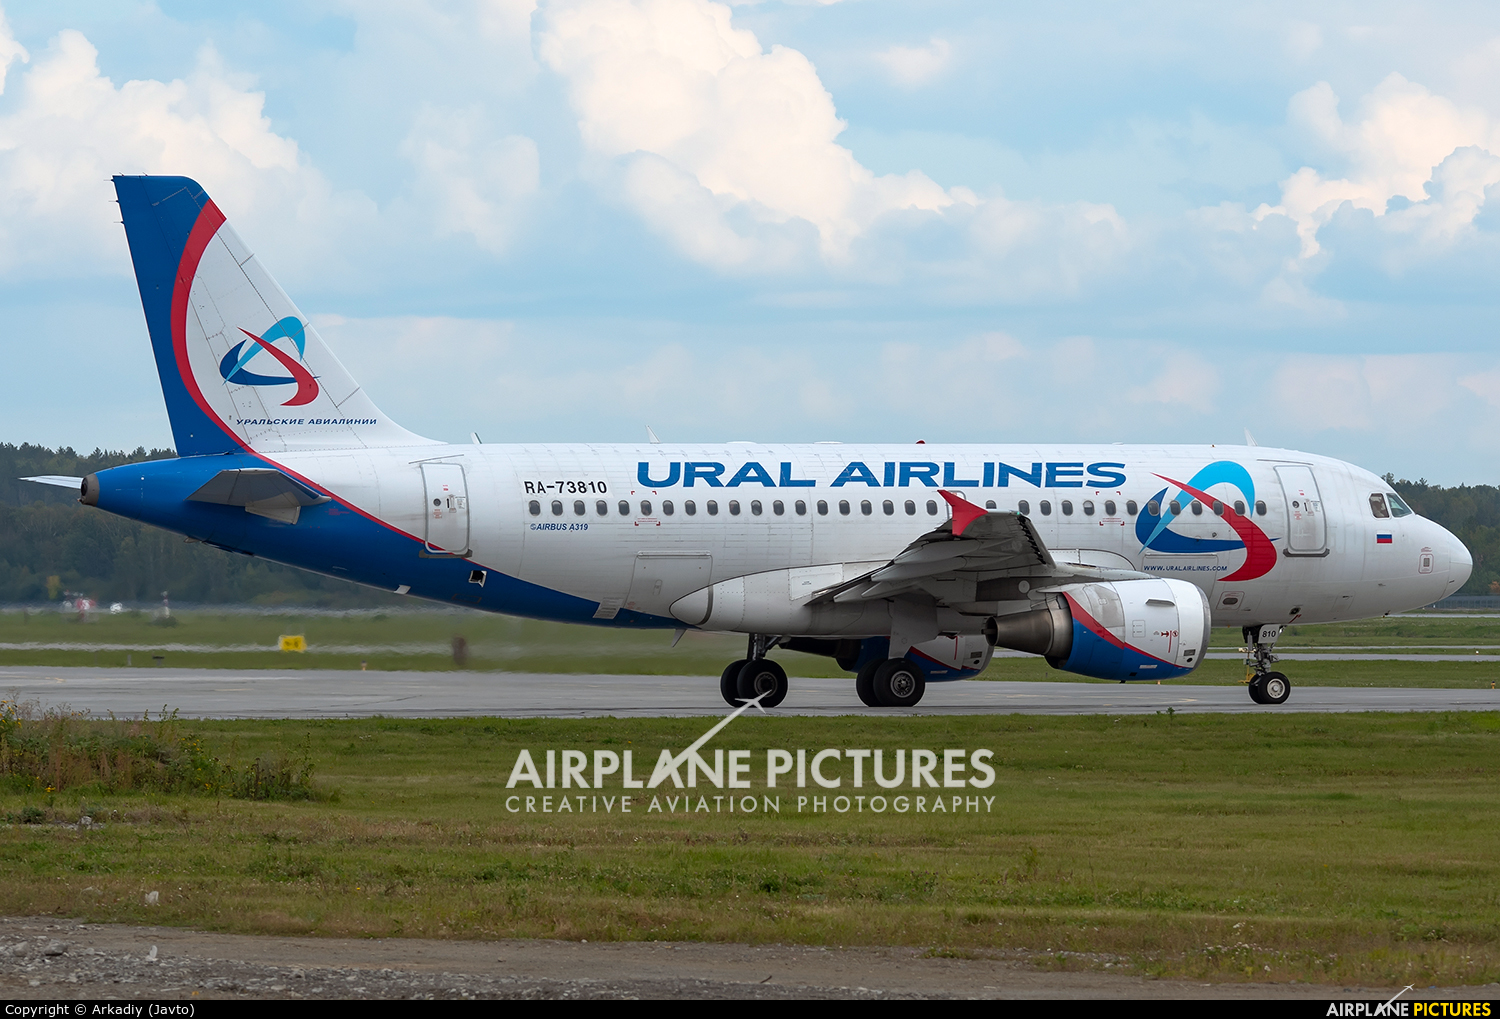 Ural Airlines RA-73810 aircraft at Koltsovo - Ekaterinburg